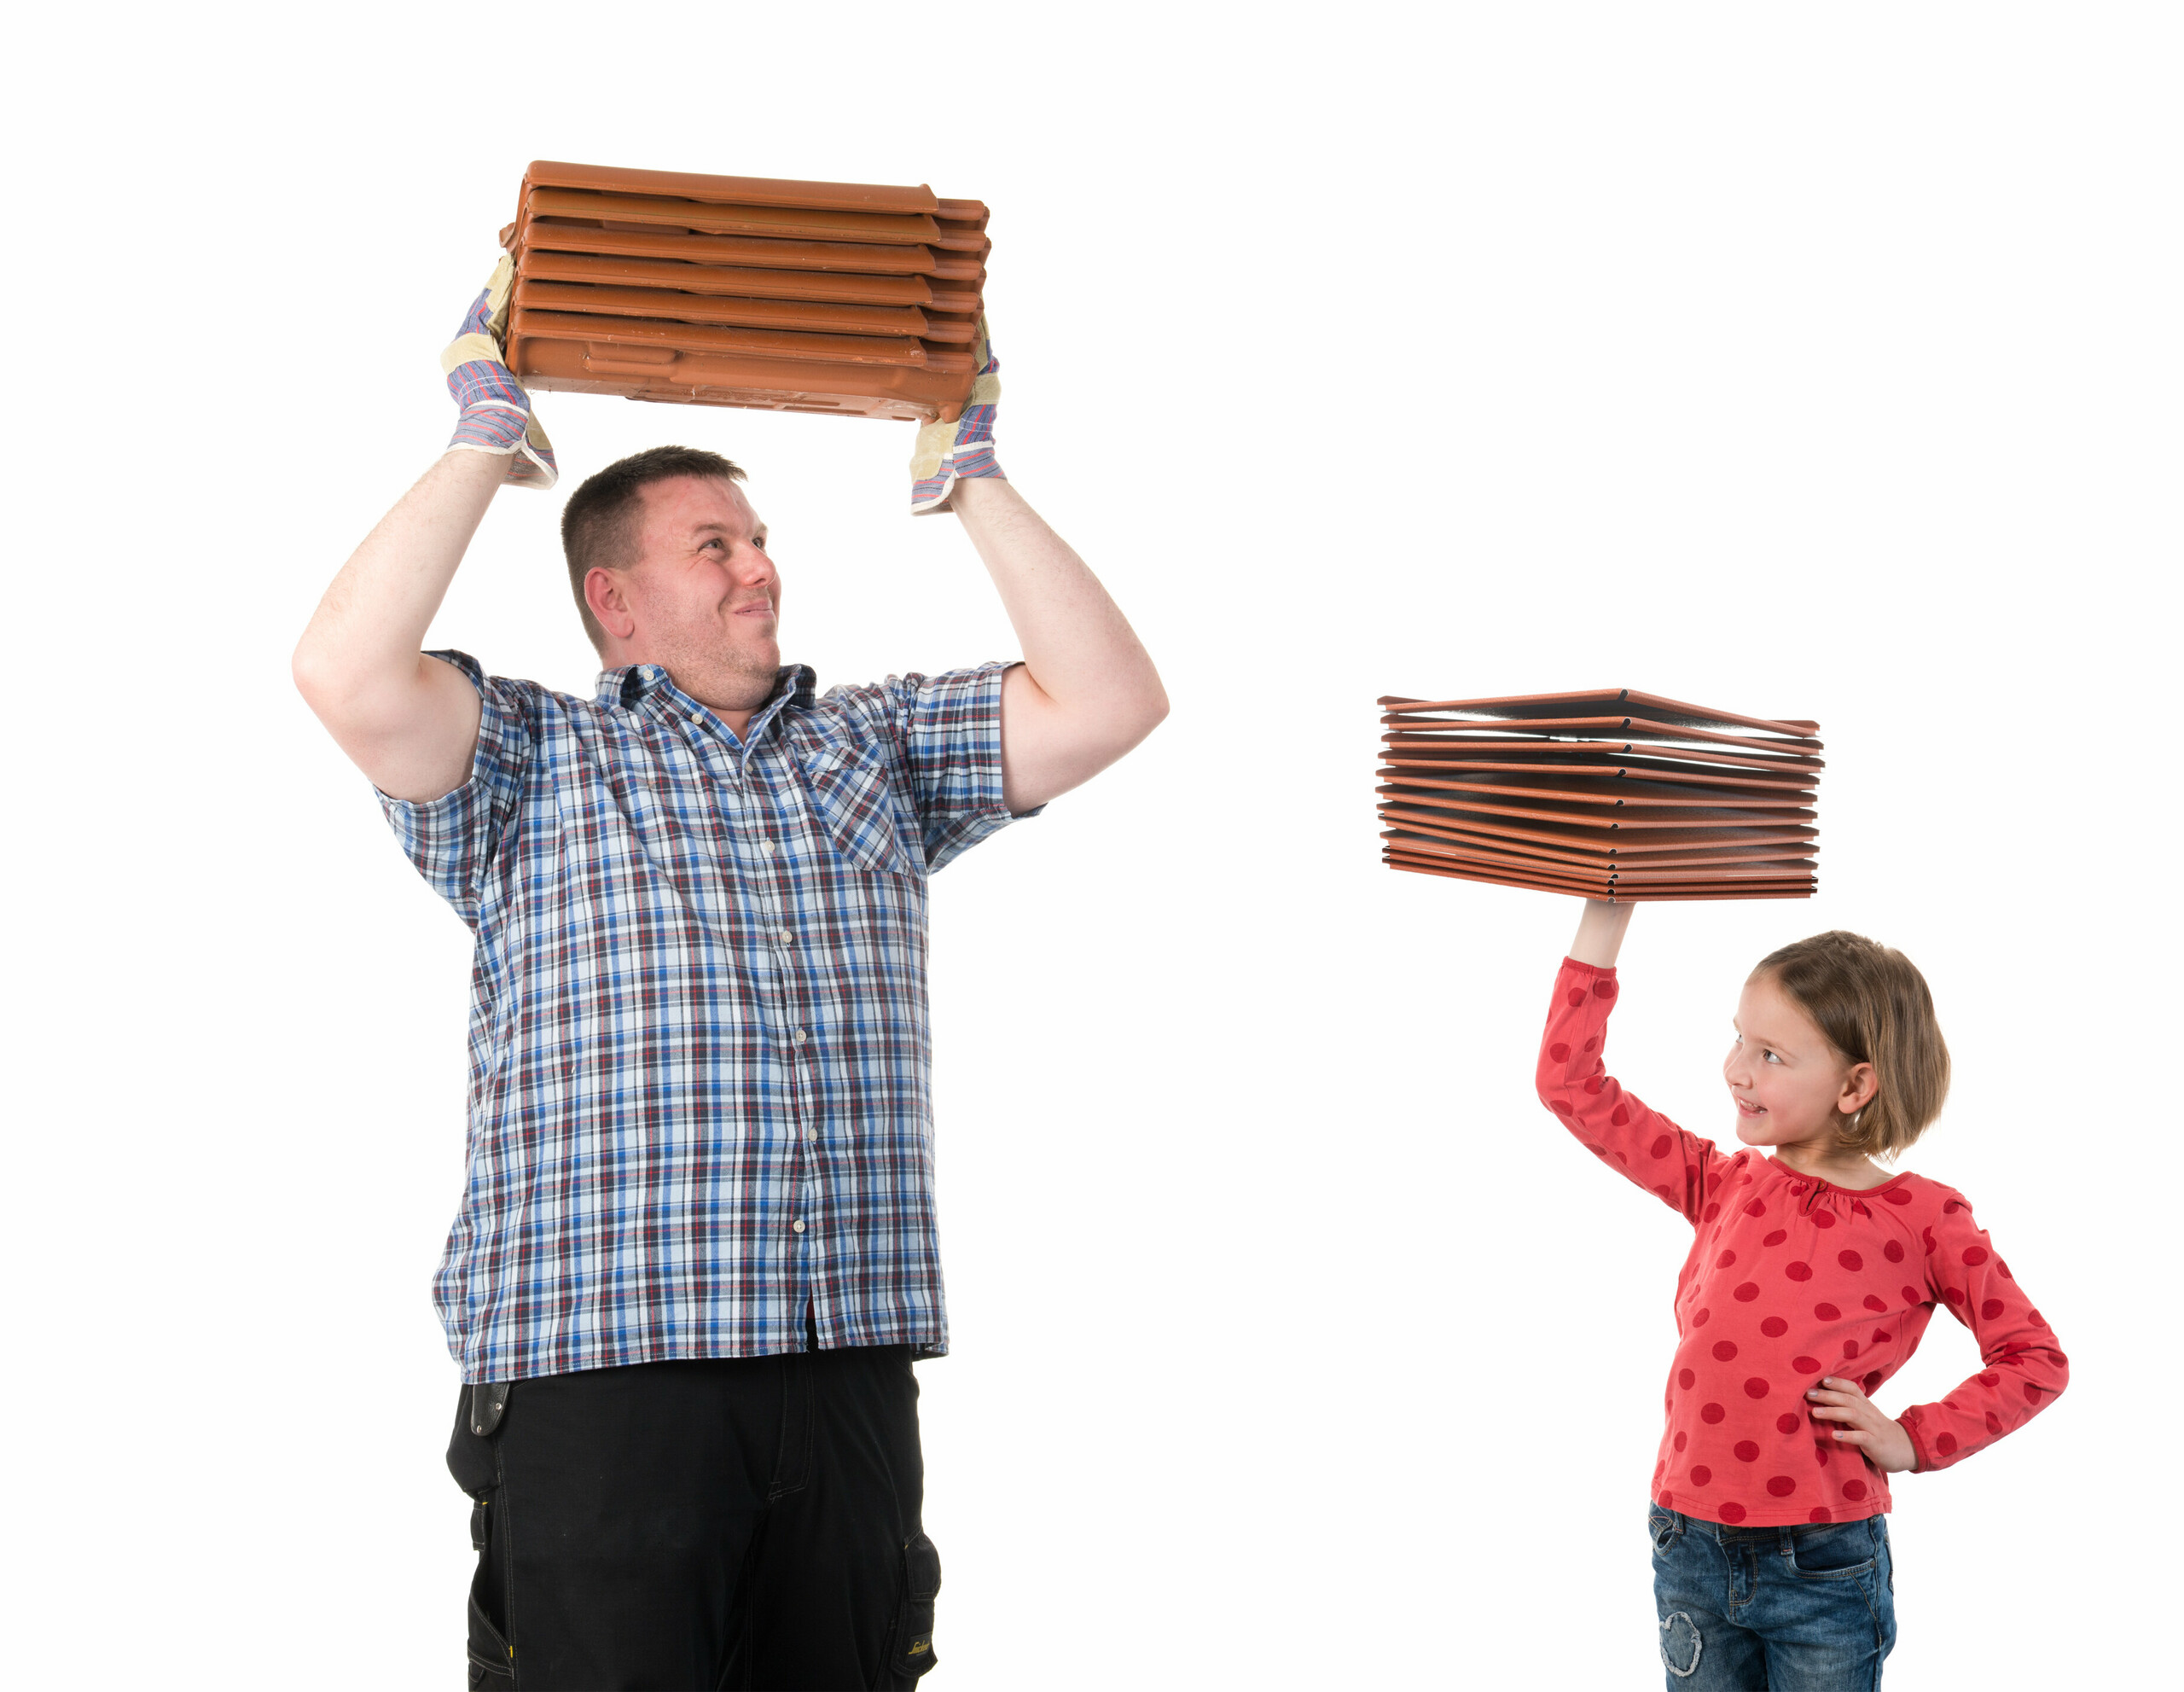 Fördelen med PREFA-produkter i jämförelse med traditionella tegelprodukter – illustrerat med en flicka som med lätthet håller upp PREFA-produkter och en man som viker sig under vikten av tegelpannor.